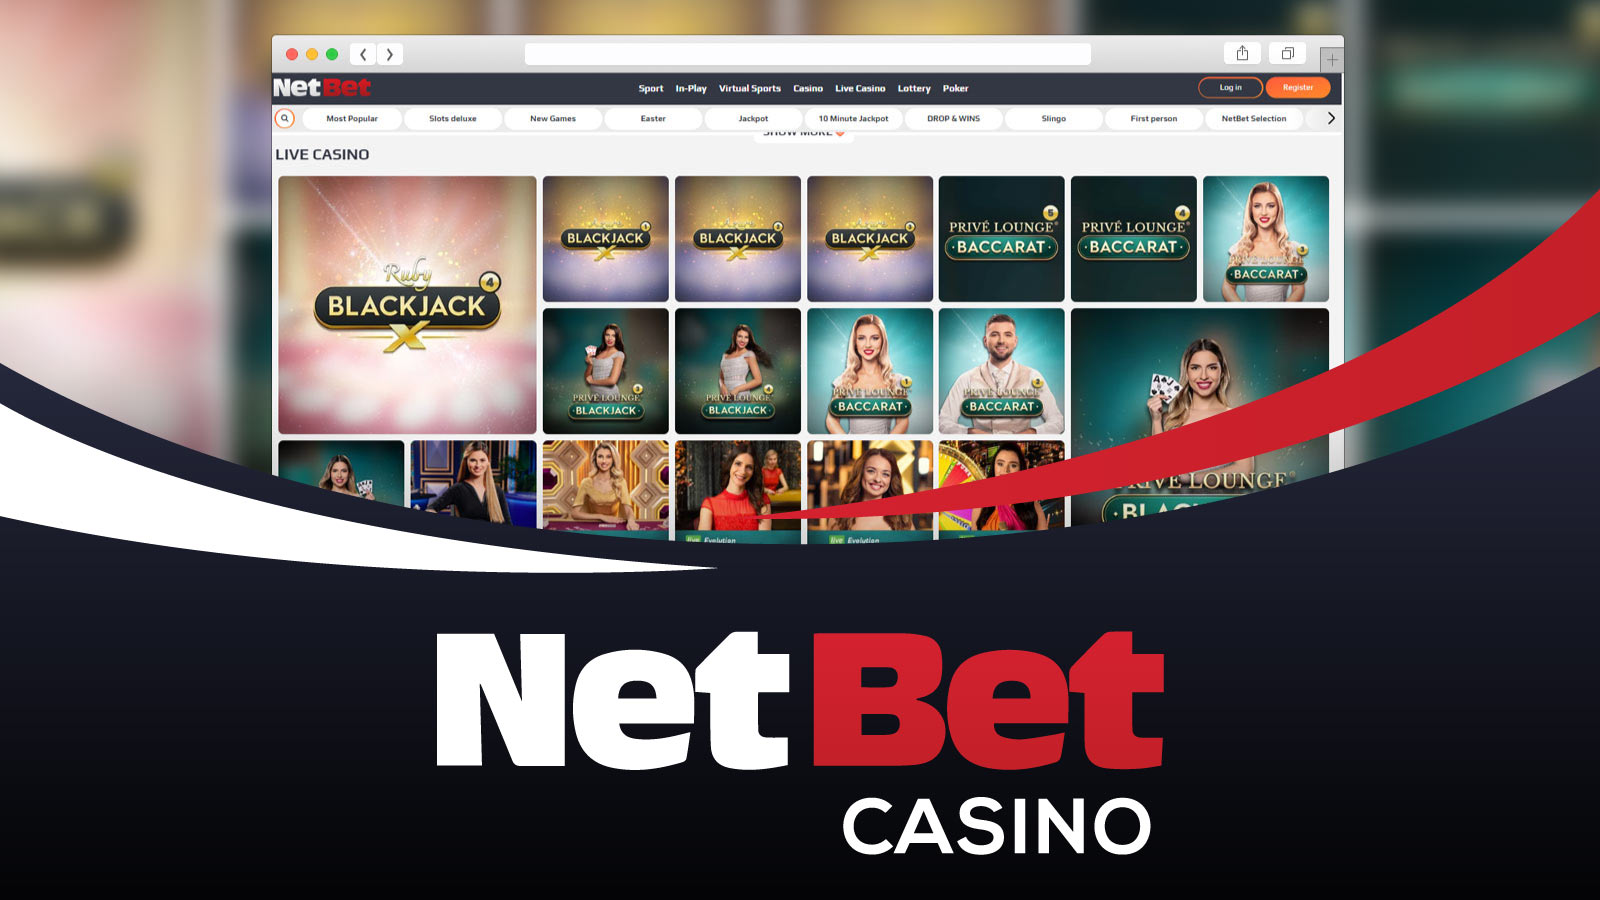 NetBet Casino Better for Live Dealer Games and Welcome Bonus